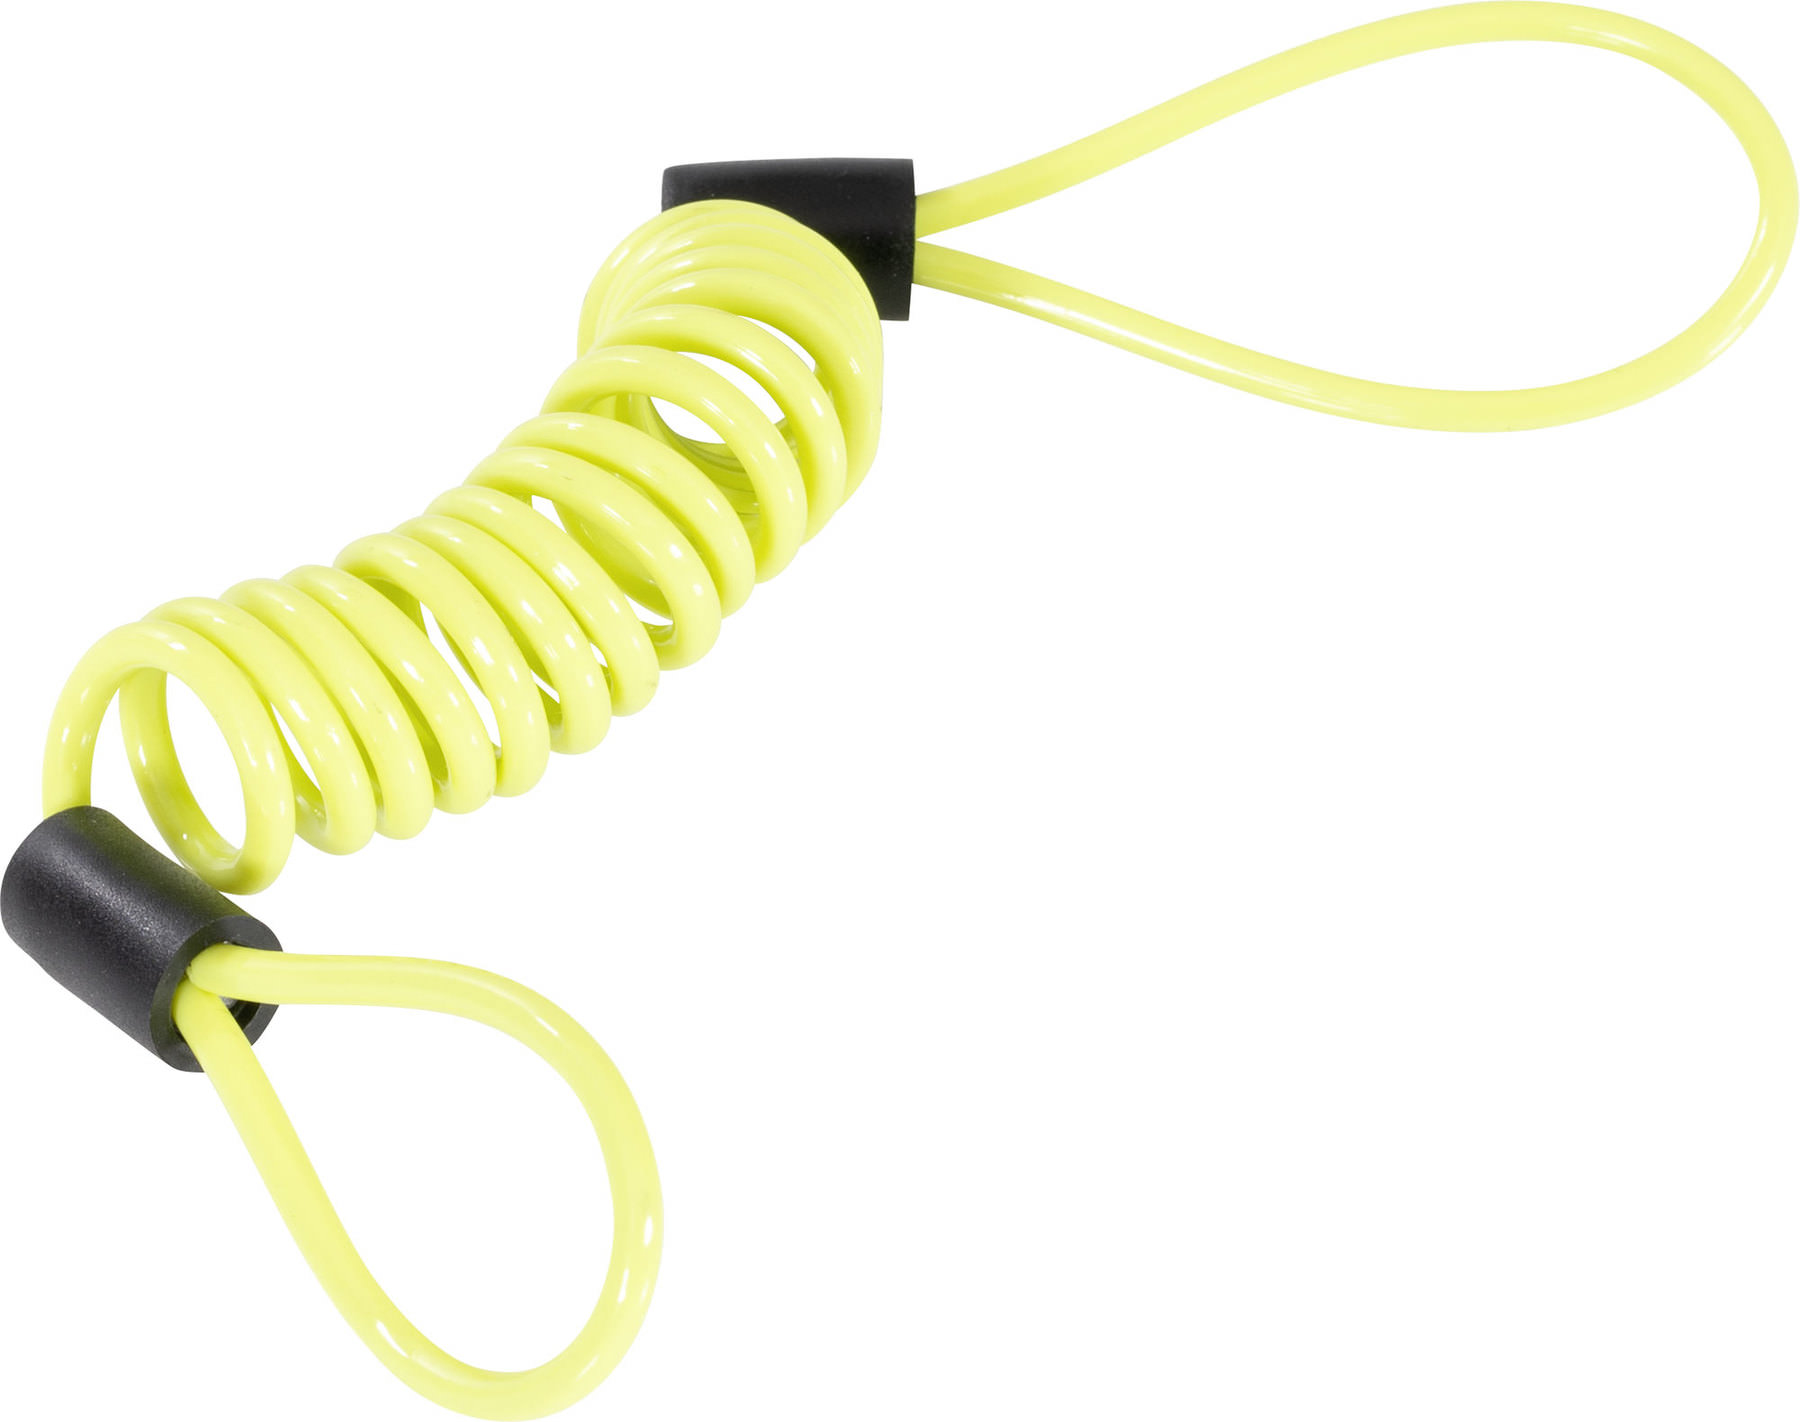 Reminder Disc Brake Bag Anti-theft rope Spring Cable locks Alarm Disc lock 